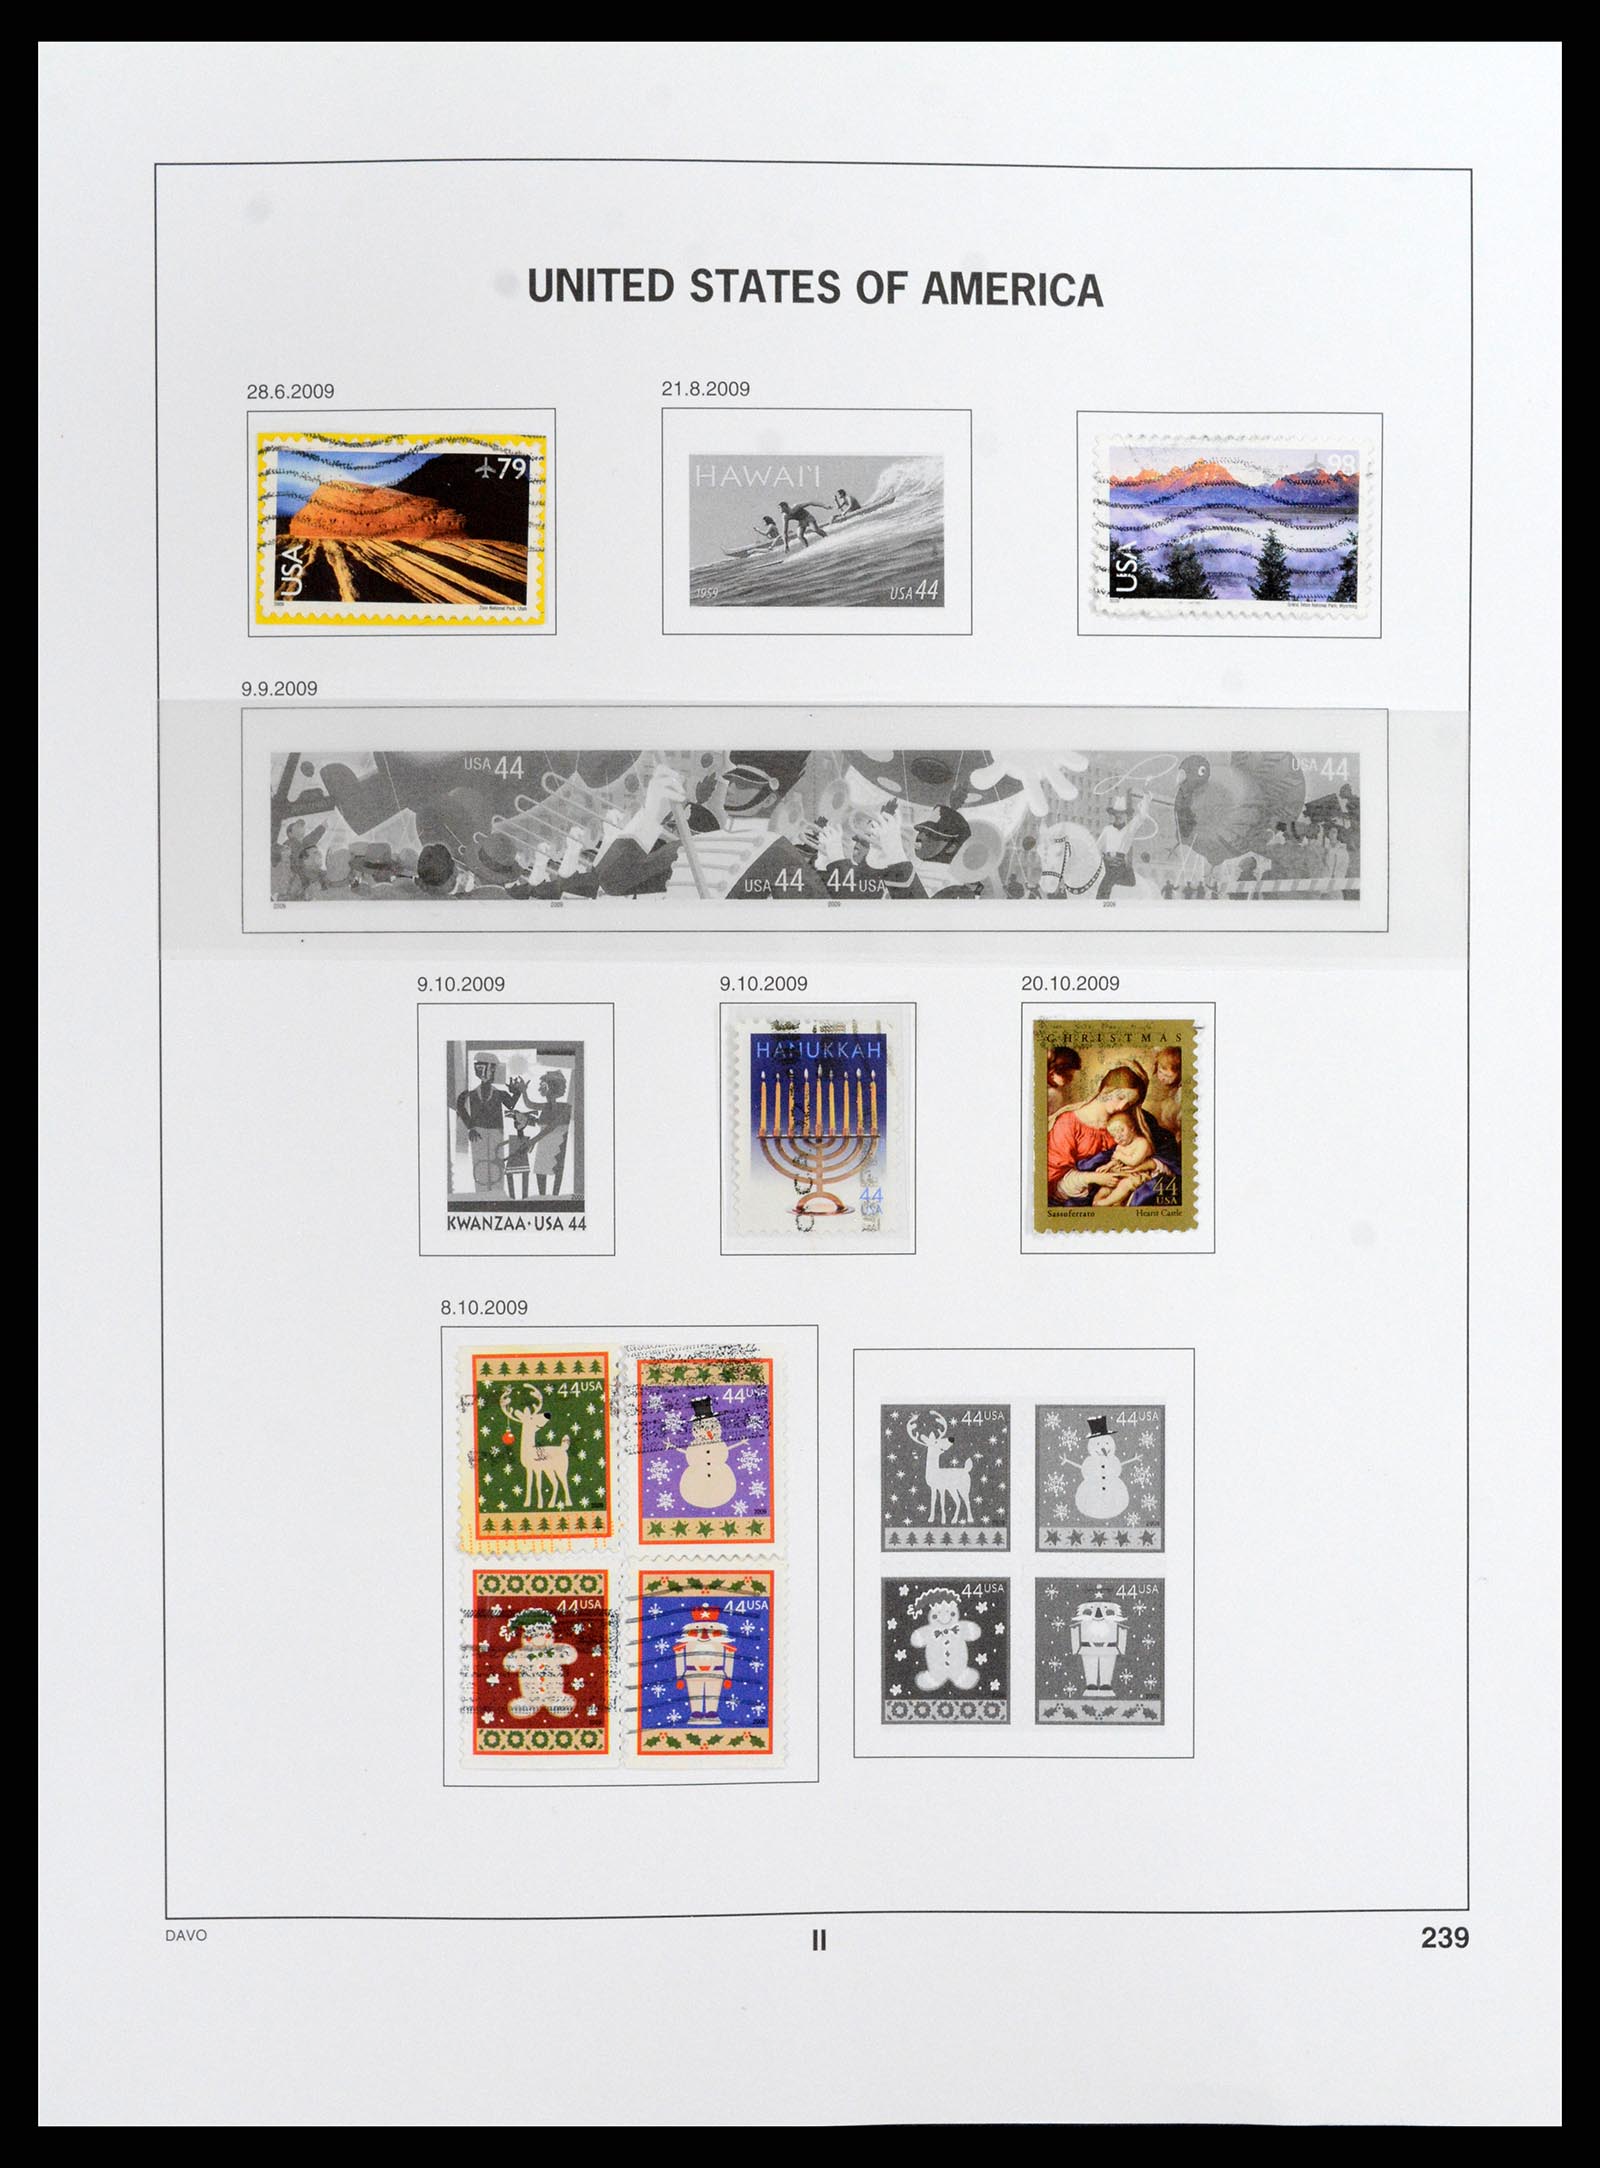 37357 102 - Stamp collection 37357 USA 1945-2009.